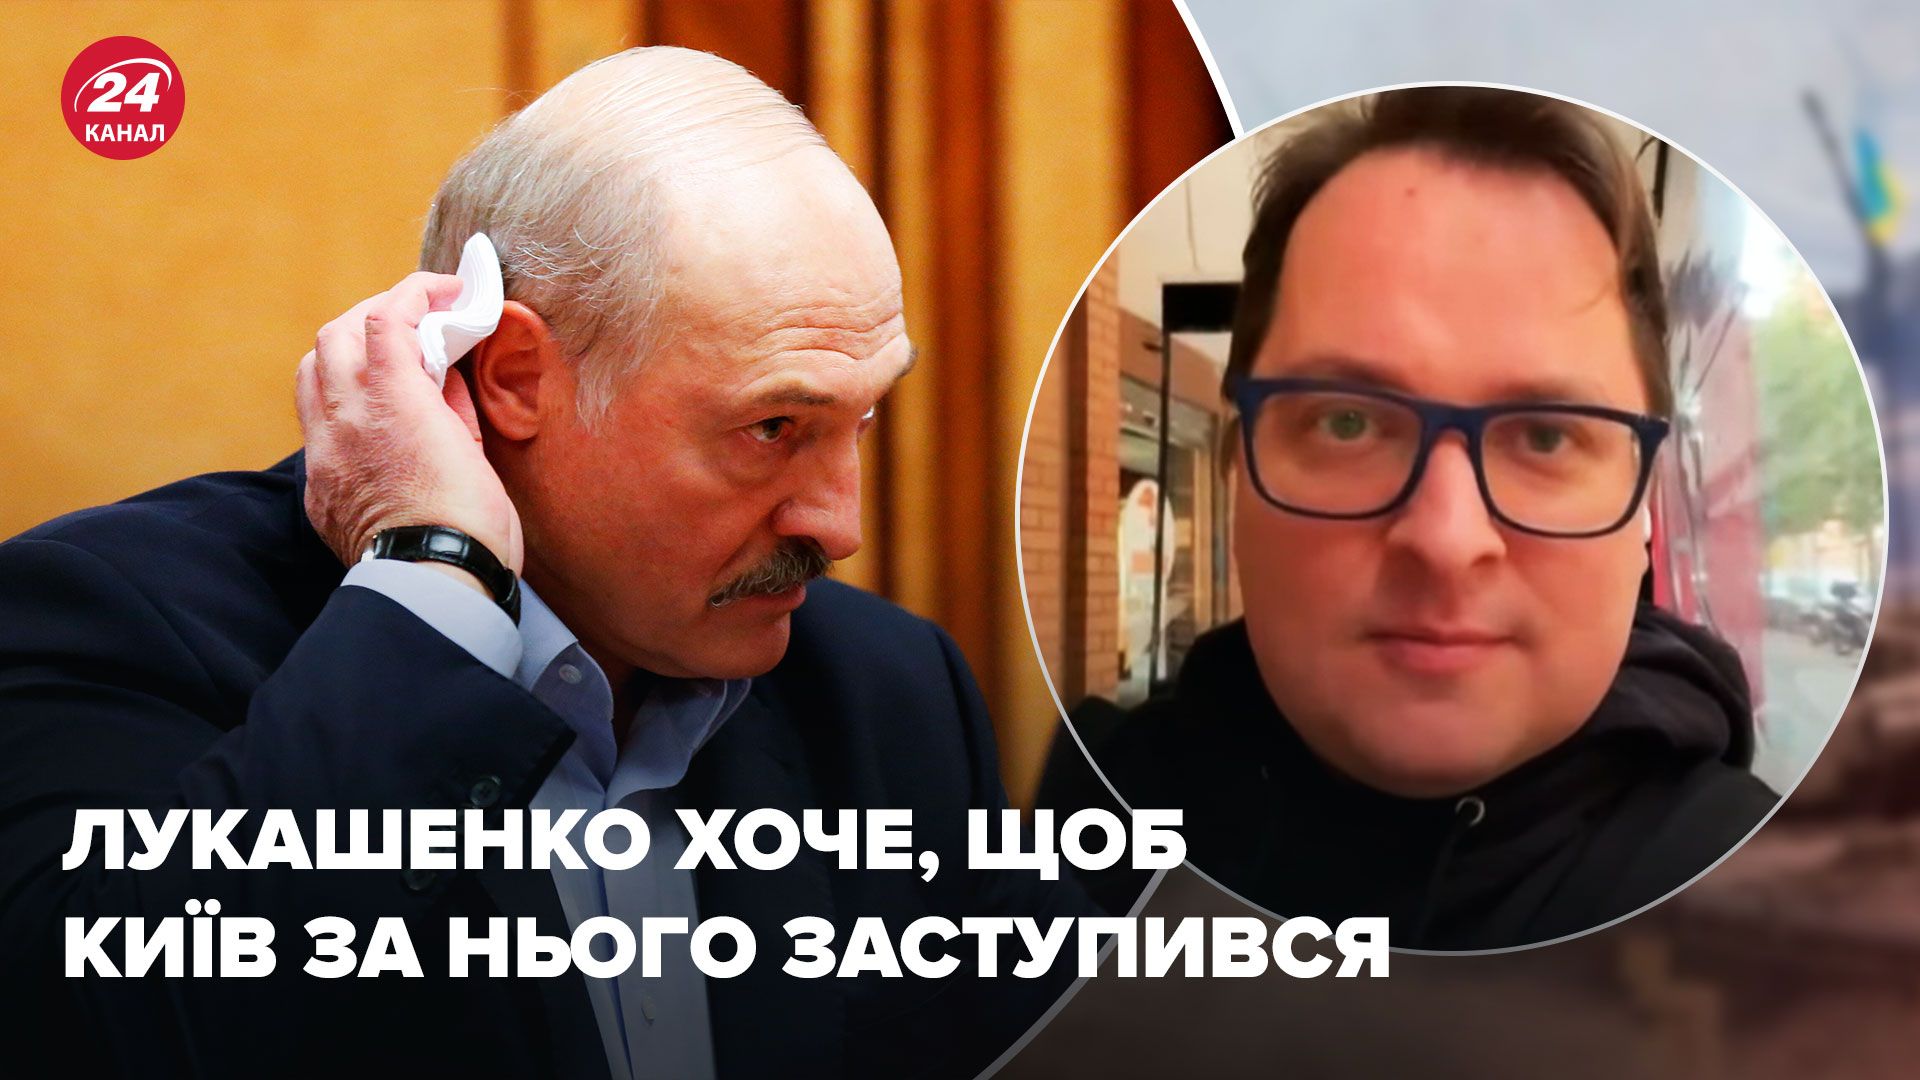 Лукашенко придумал пакт о ненападении с Украиной - хочет, чтобы Киев его защитил - 24 Канал